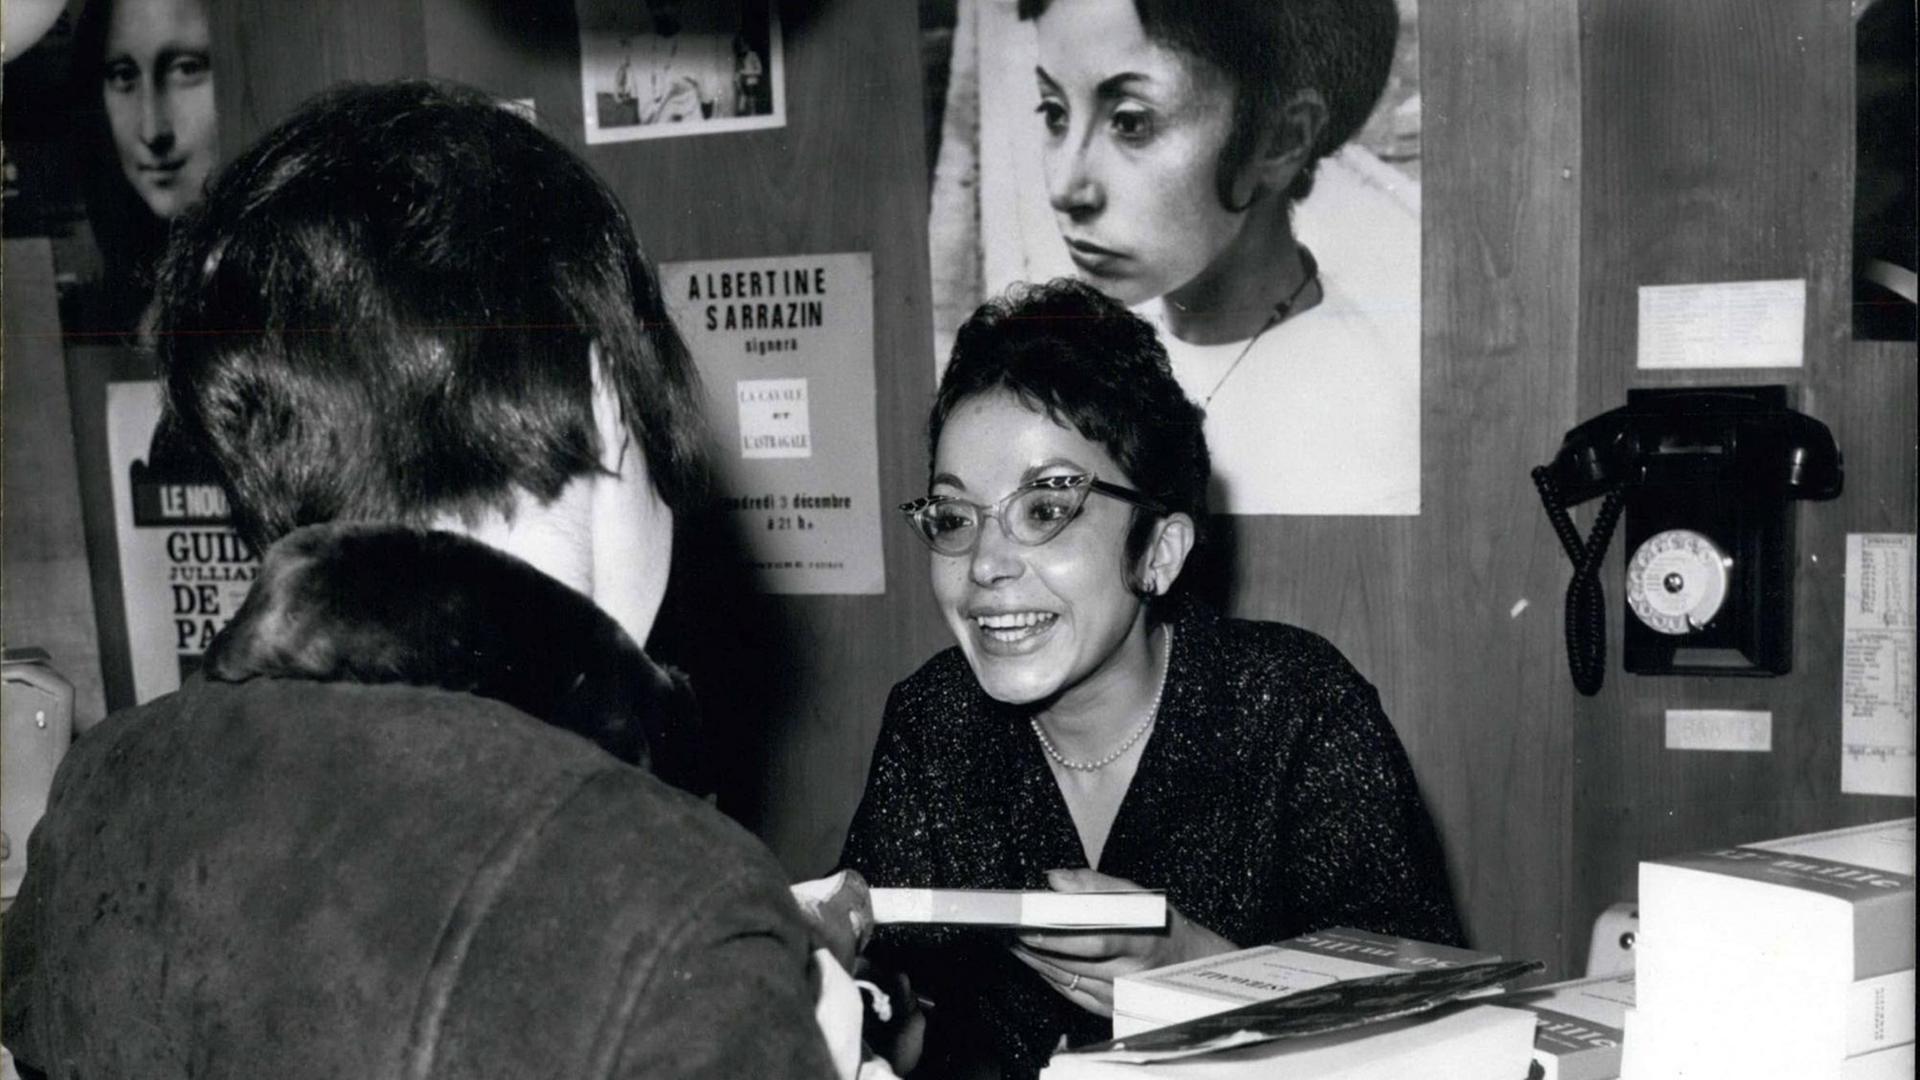 Die französische Schriftstellerin Albertine Sarrazin bei einer Signierstunde im Jahr 1965.